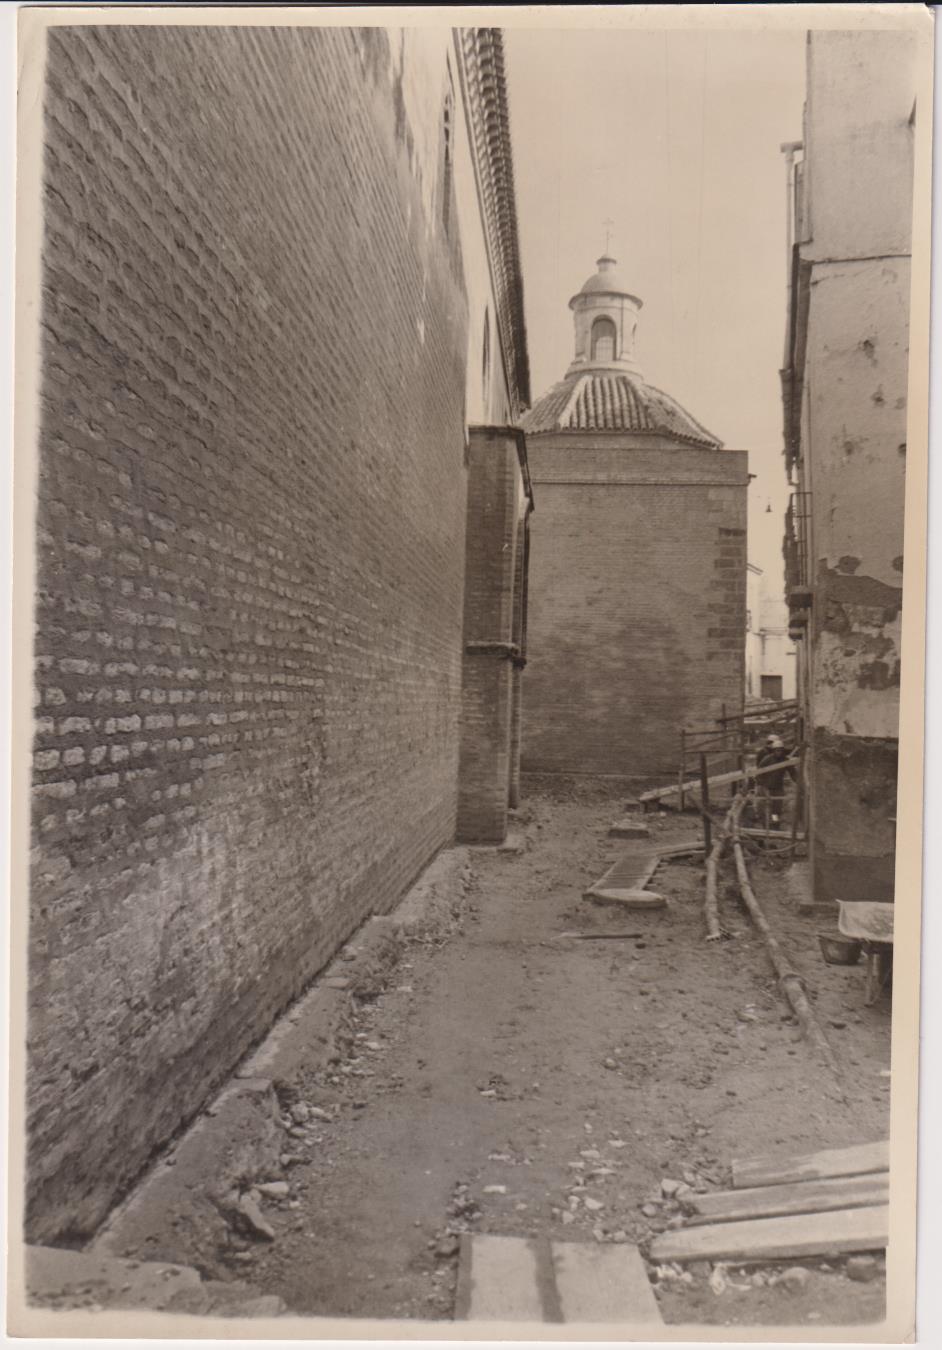 Fotografía (21x15,5) ObraS de Restauración en la Iglesia de Santa Marina. Fotos serafín, Años 60